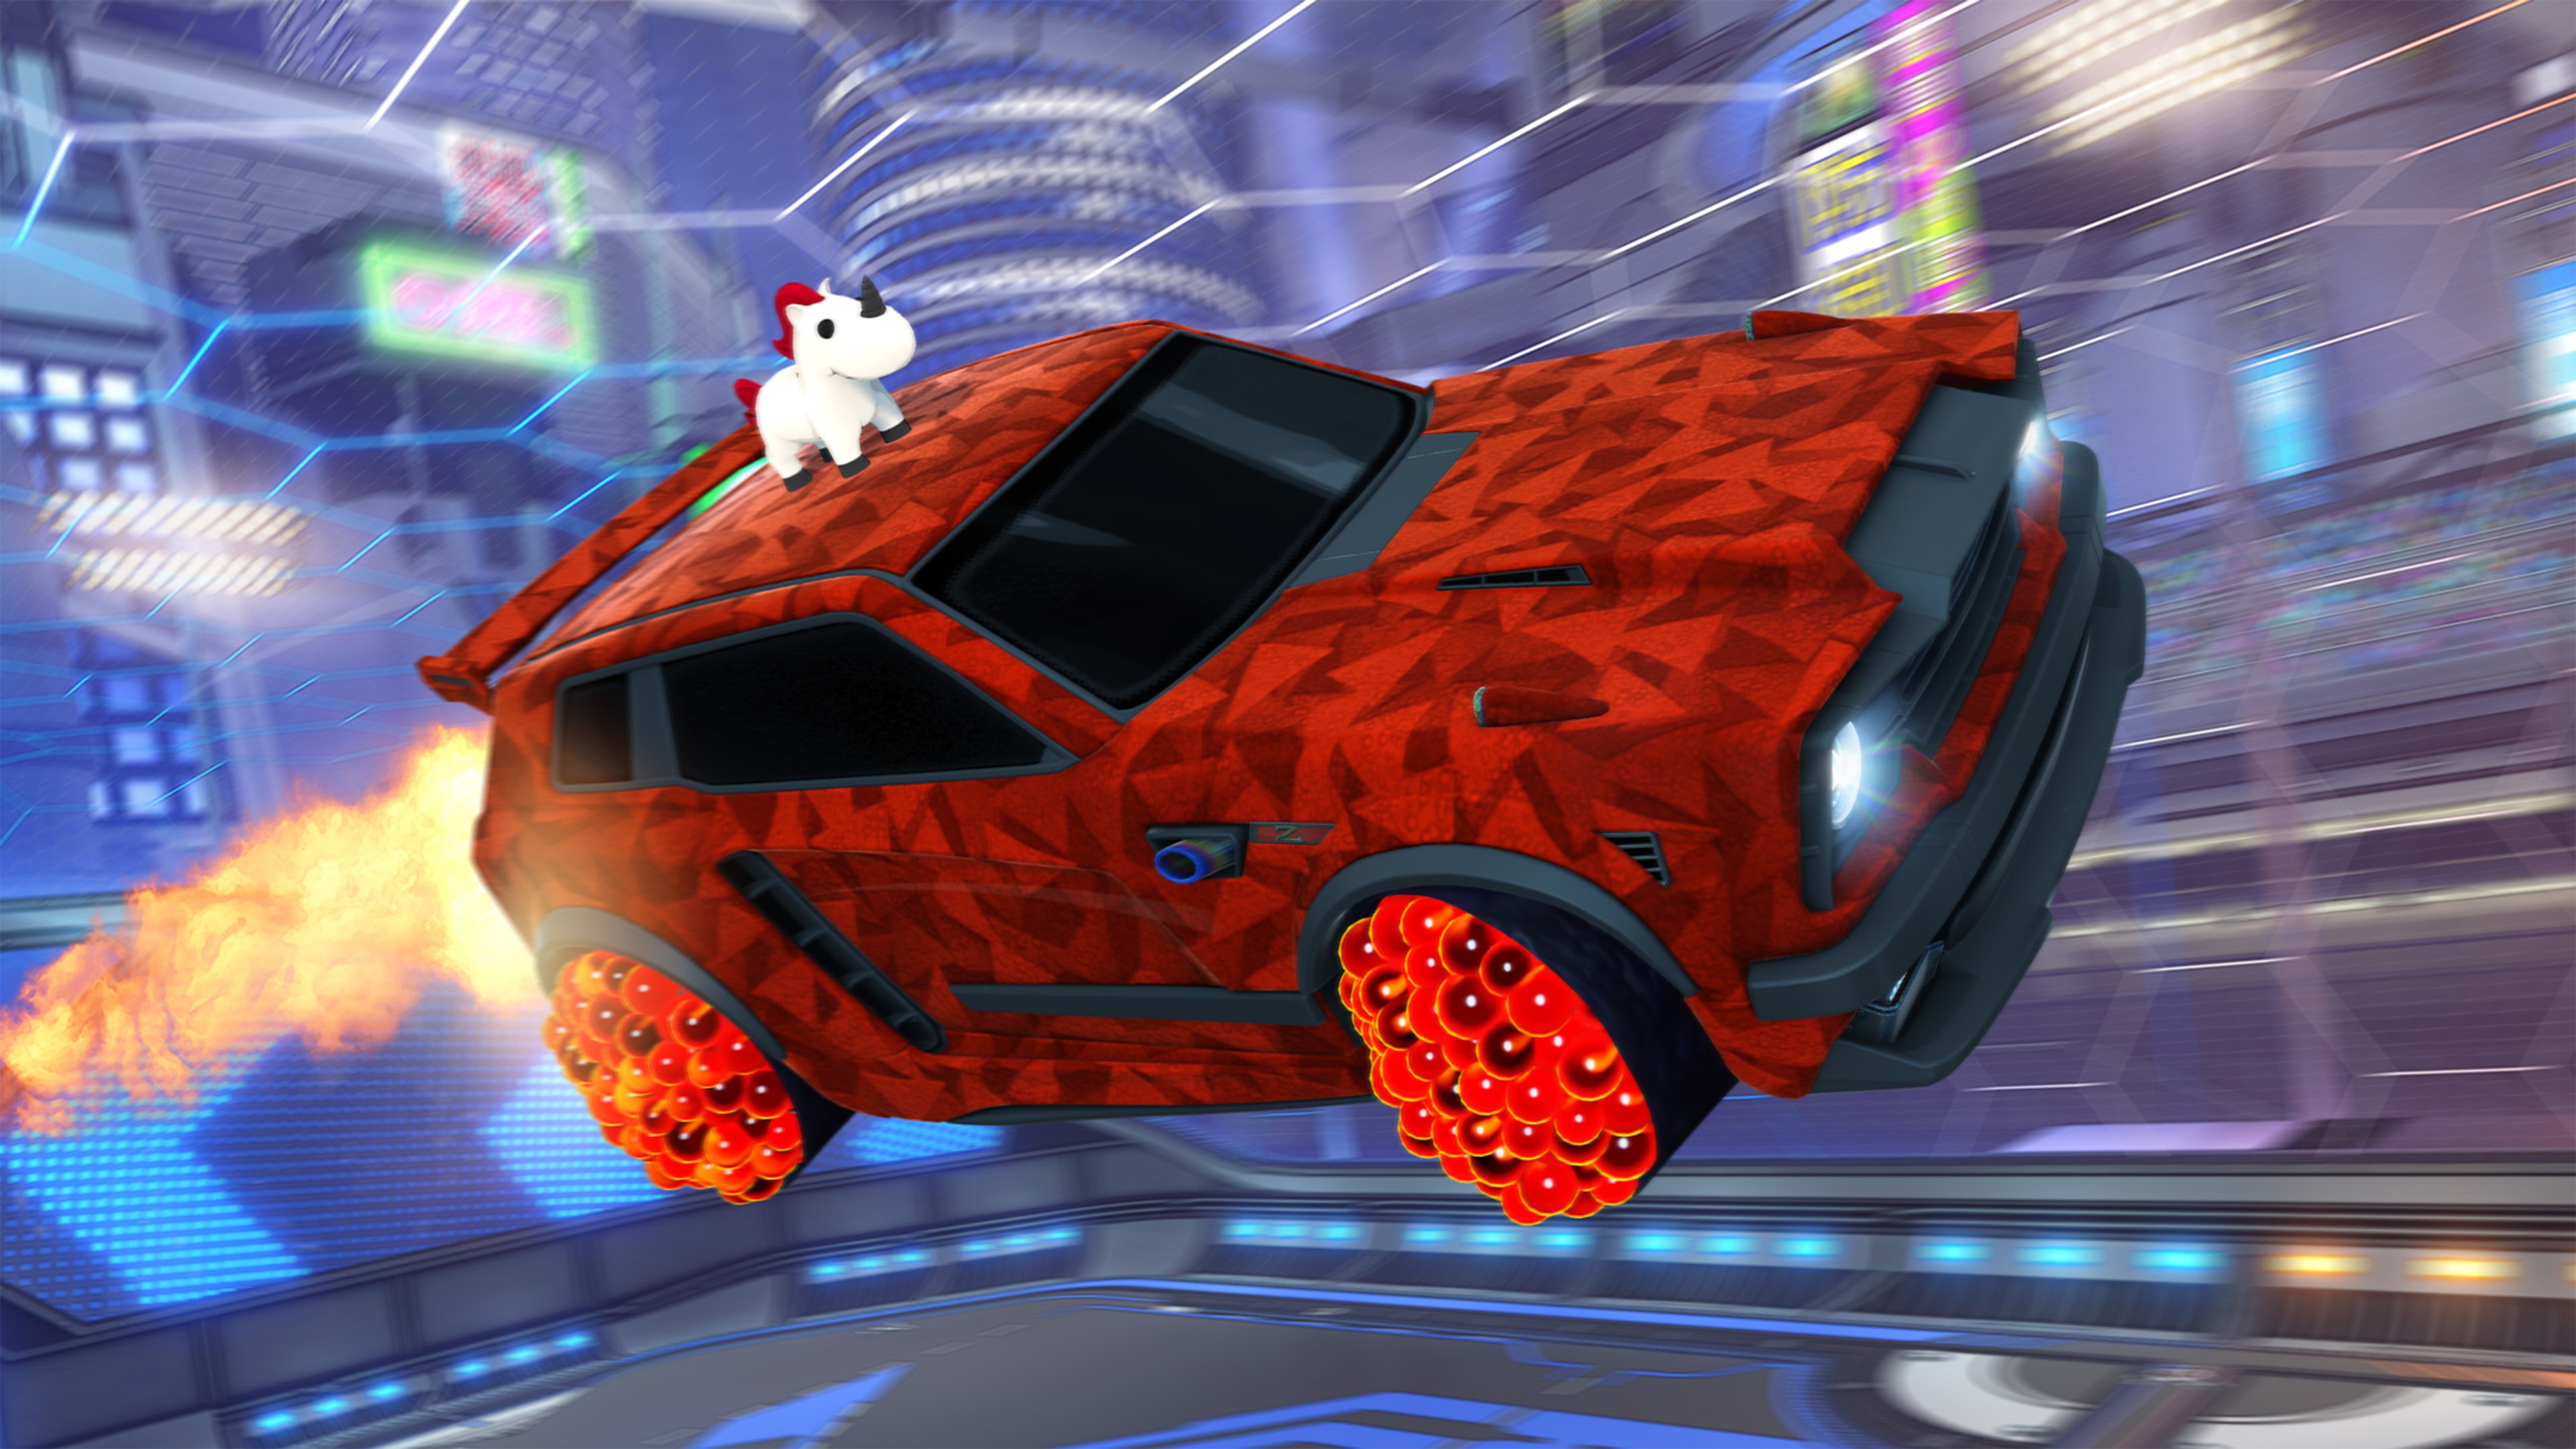 Rocket League-skærmbillede, der viser en bil med et enhjørningeagtigt dyr på taget og rød, geometrisk lakering